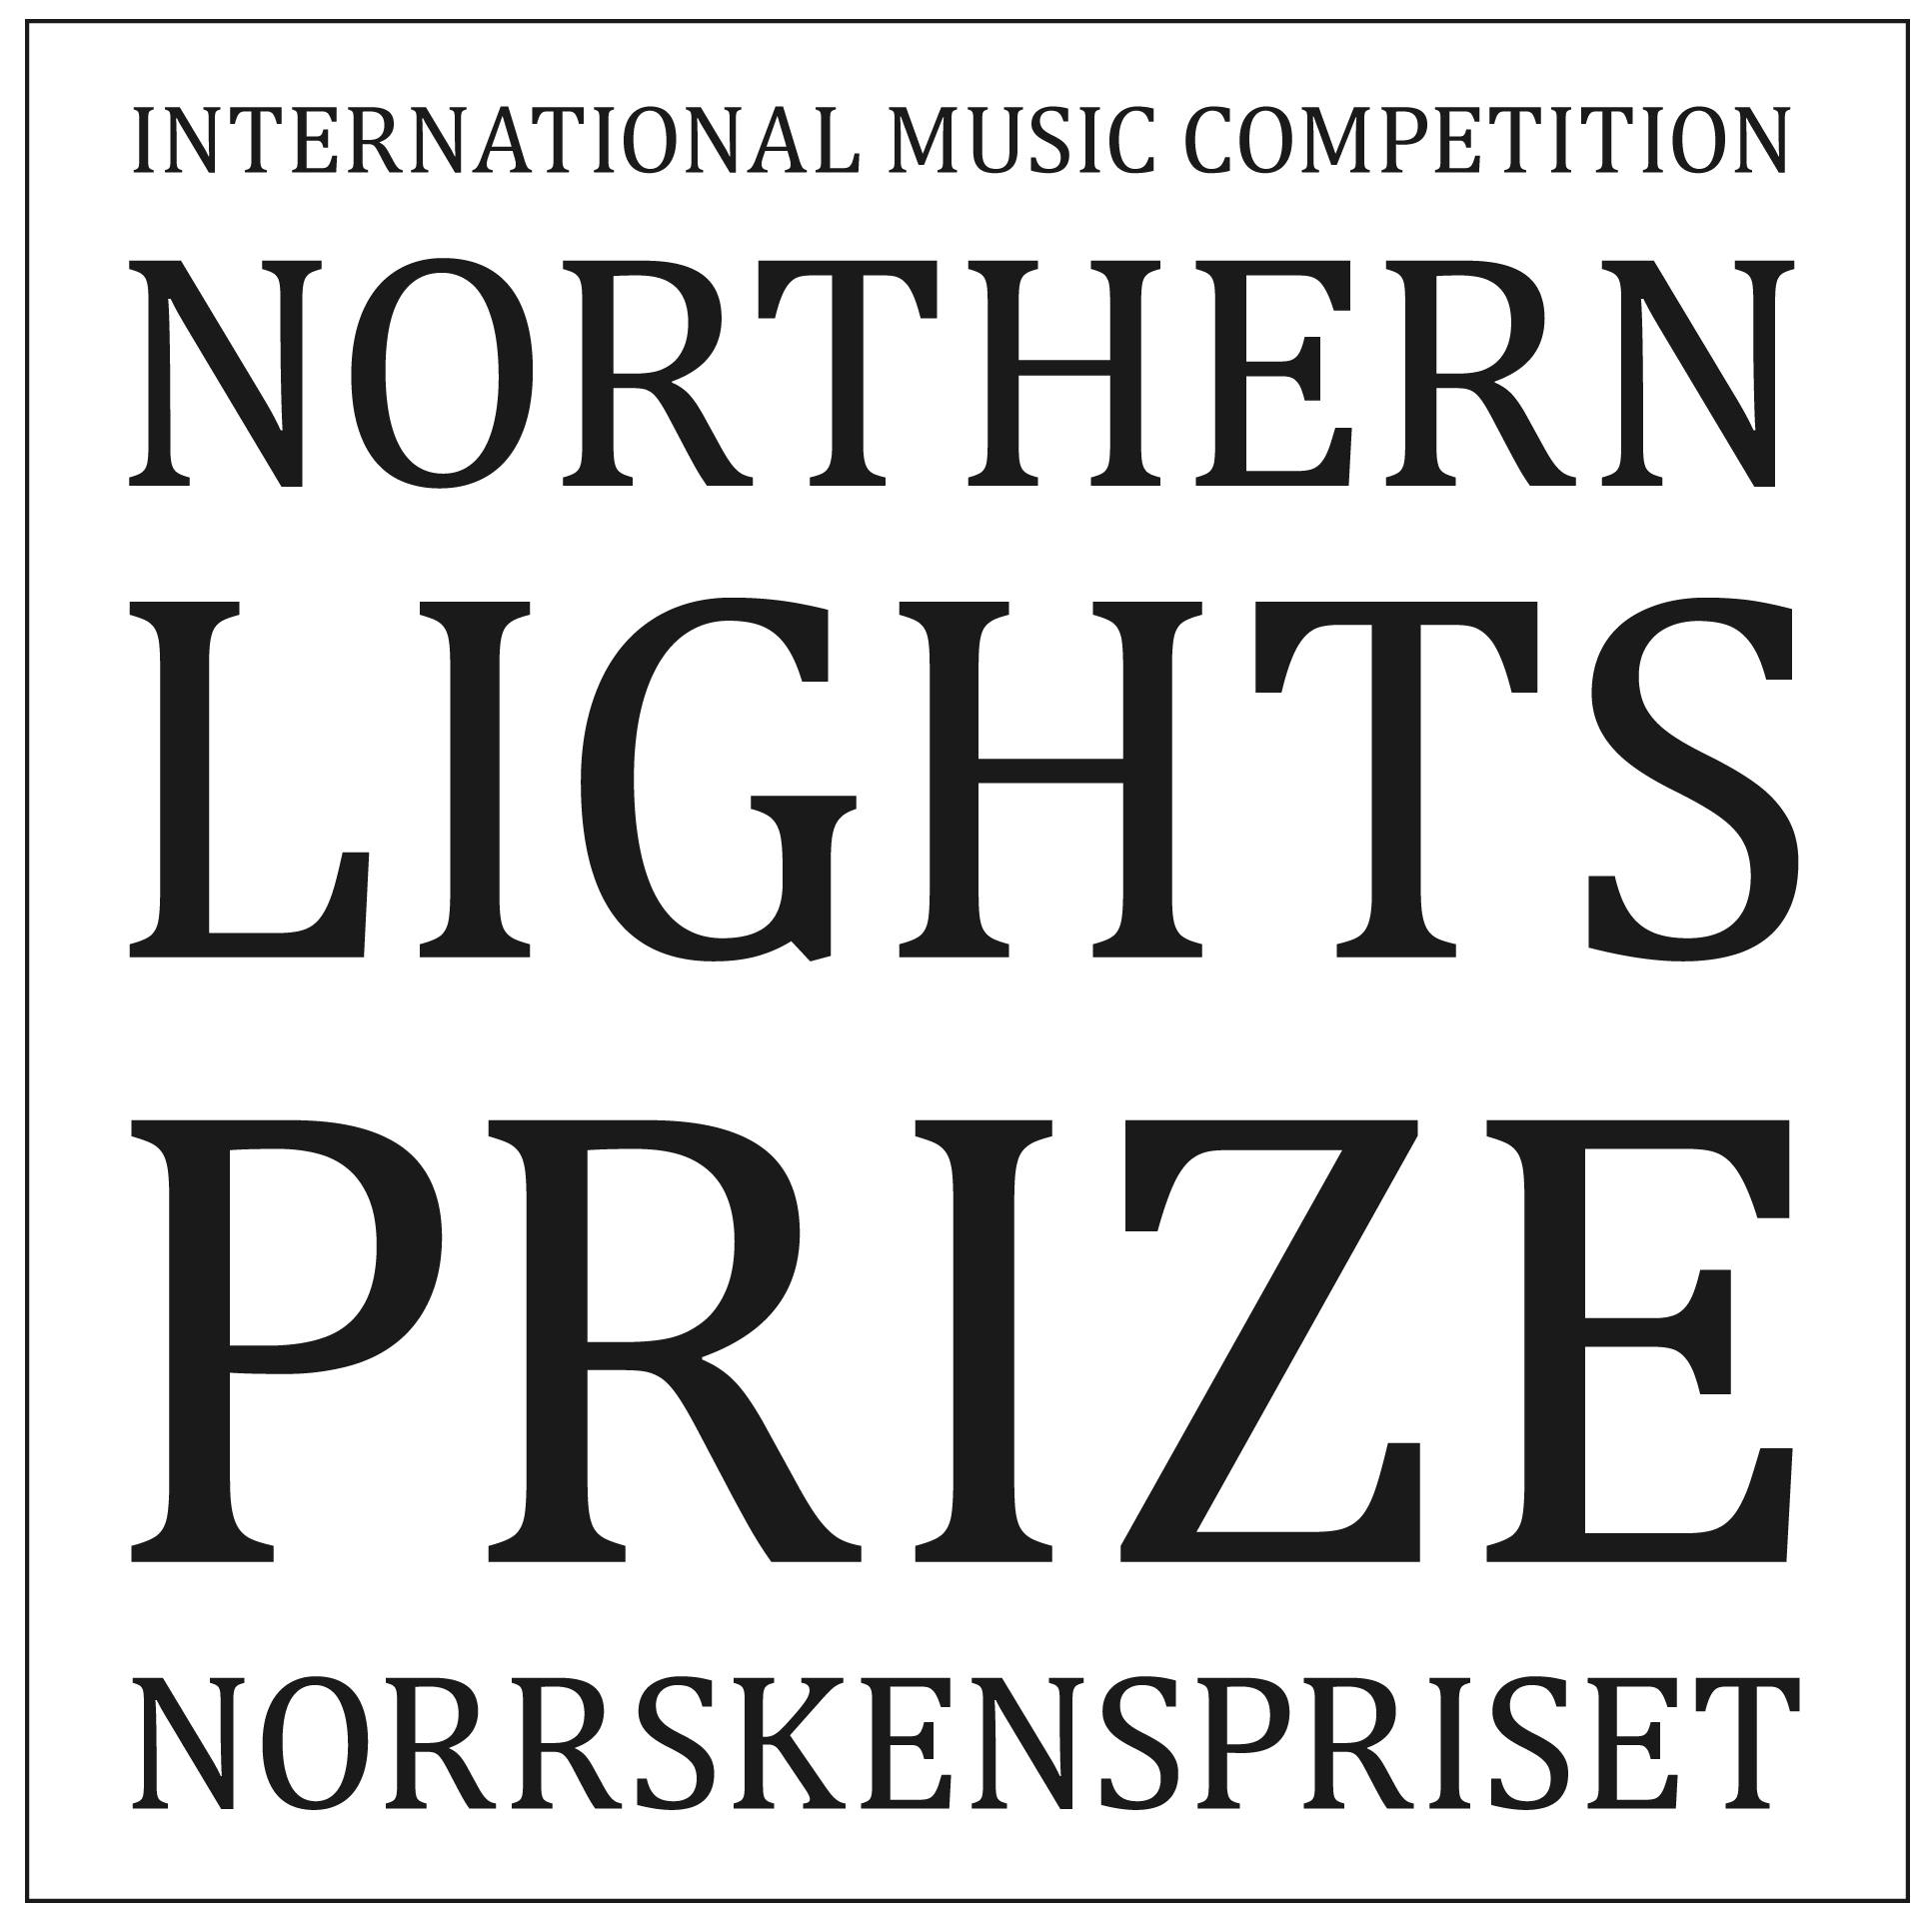 NORTHERN LIGHTS PRIZE NORRSKENSPRISET INTERNATIONAL MUSIC COMPETITION